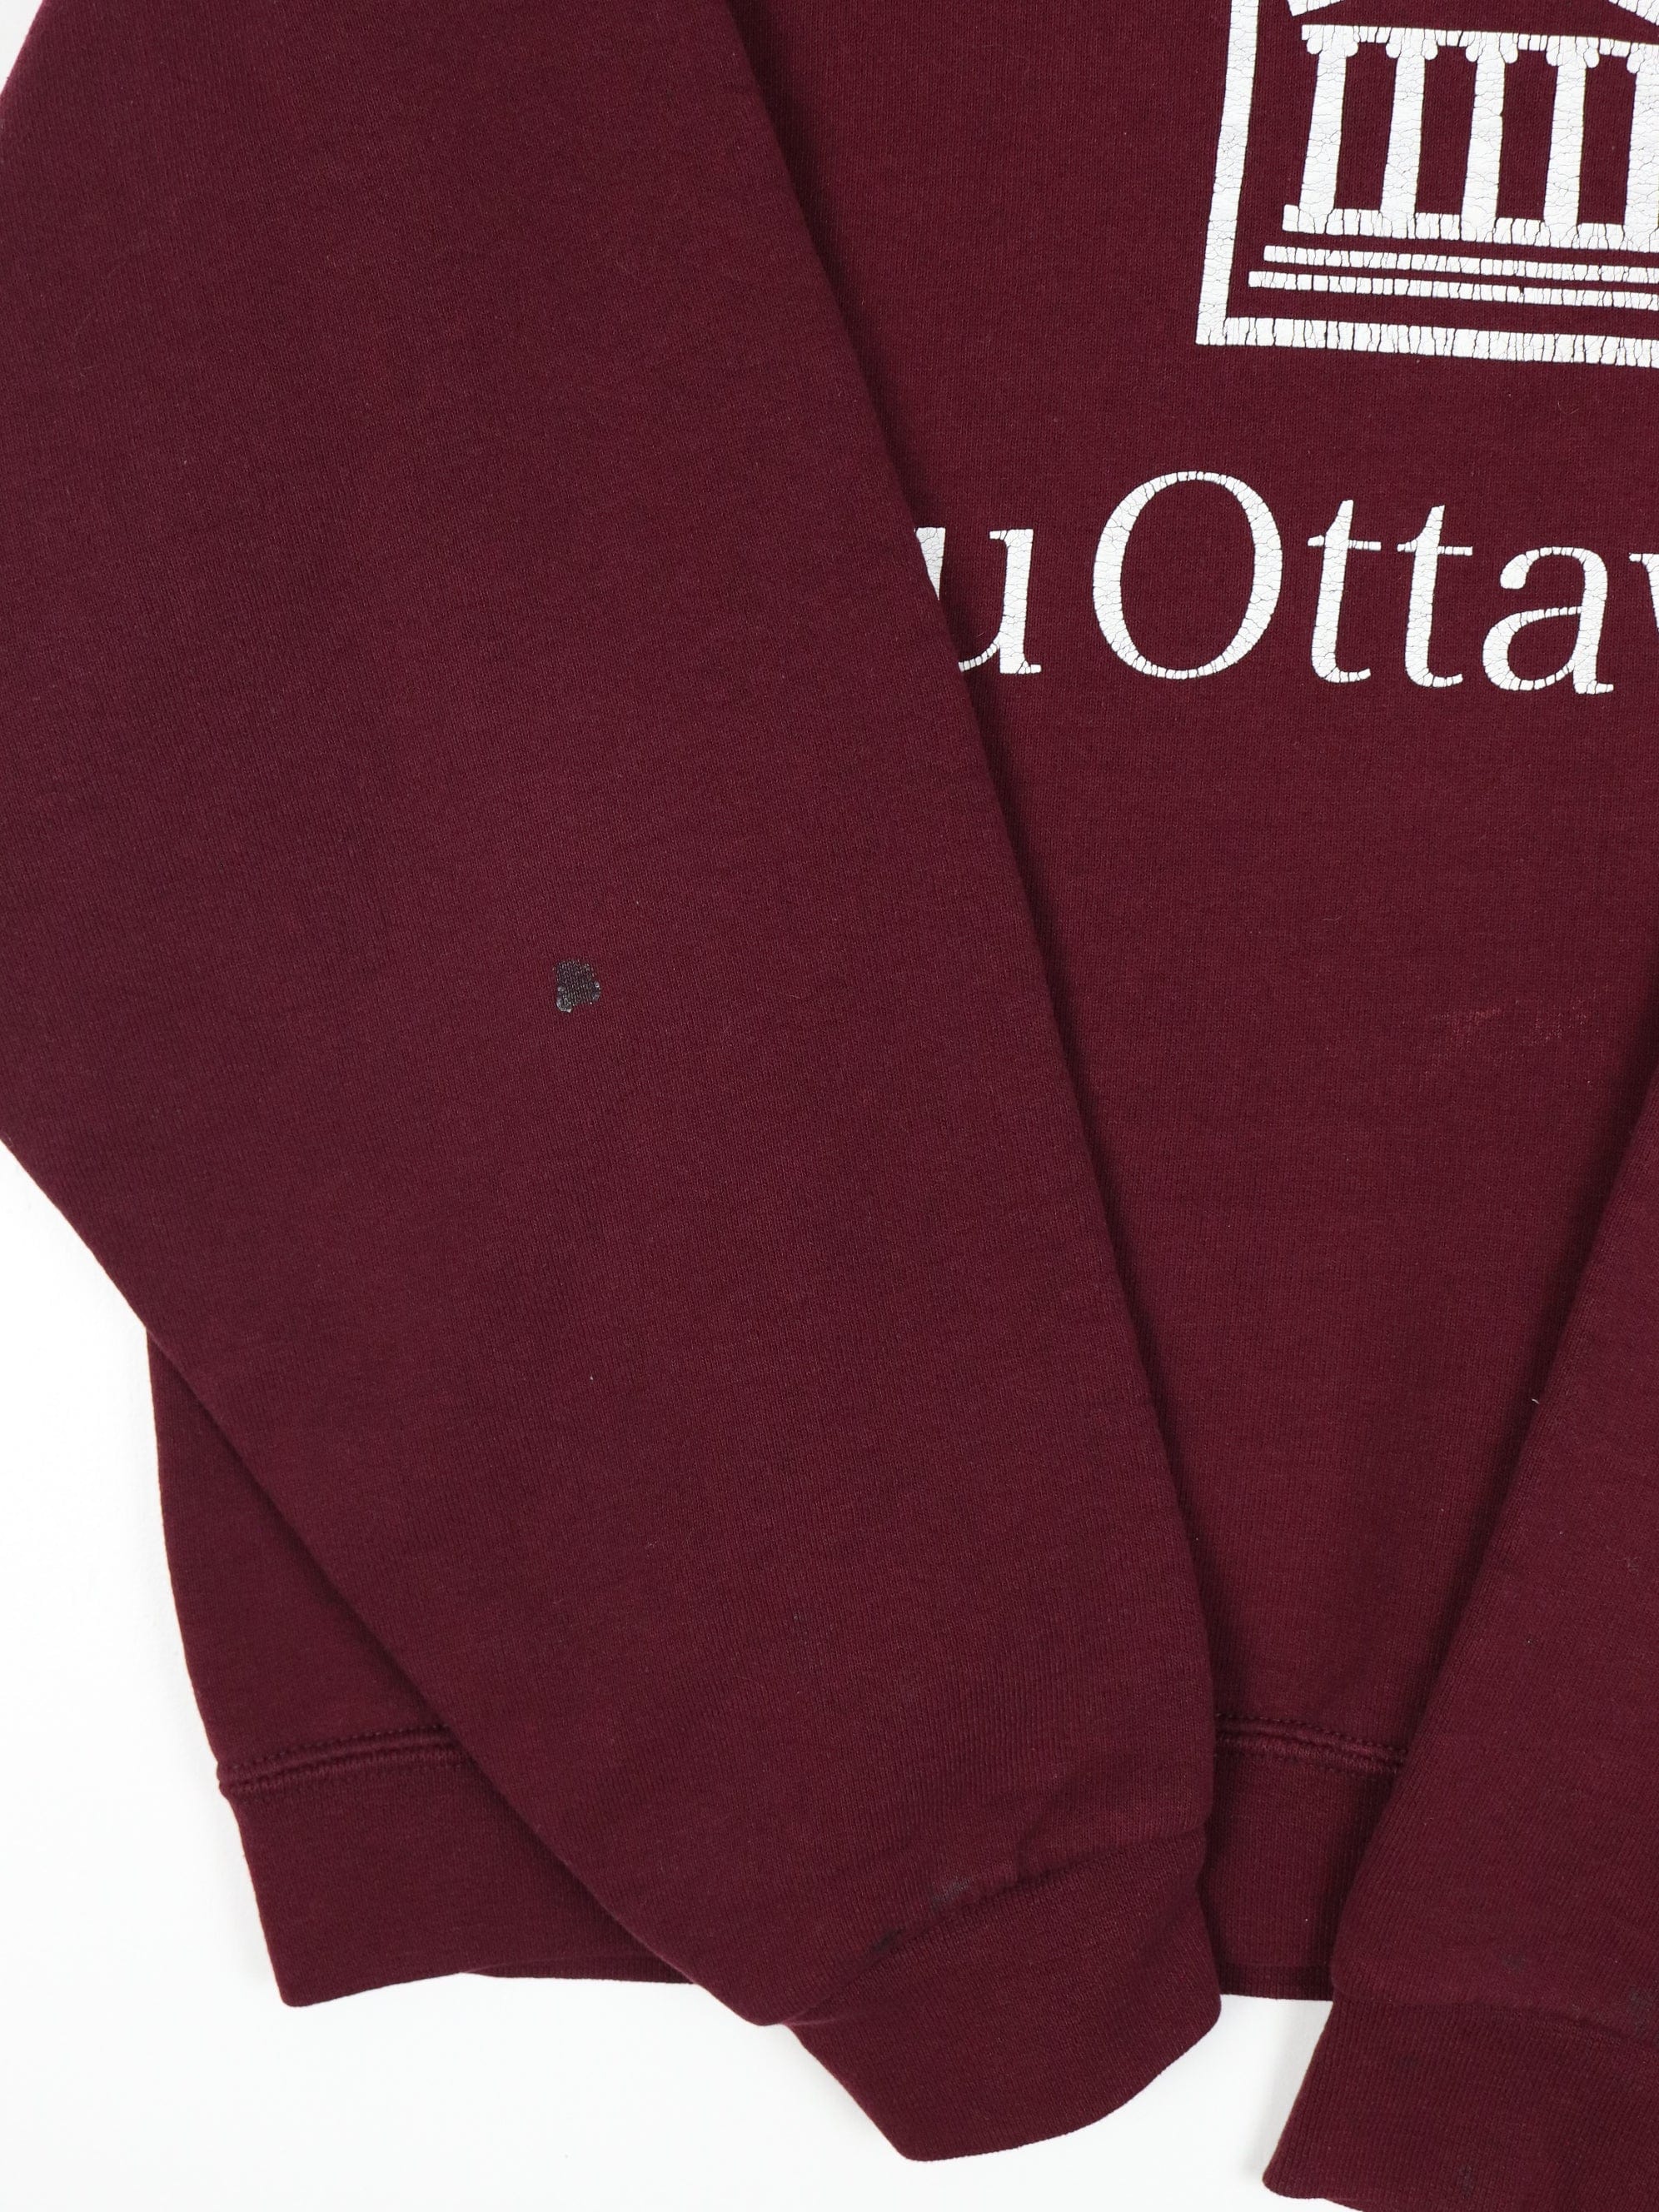 University of Ottawa Hooded Sweatshirt: Université d'Ottawa